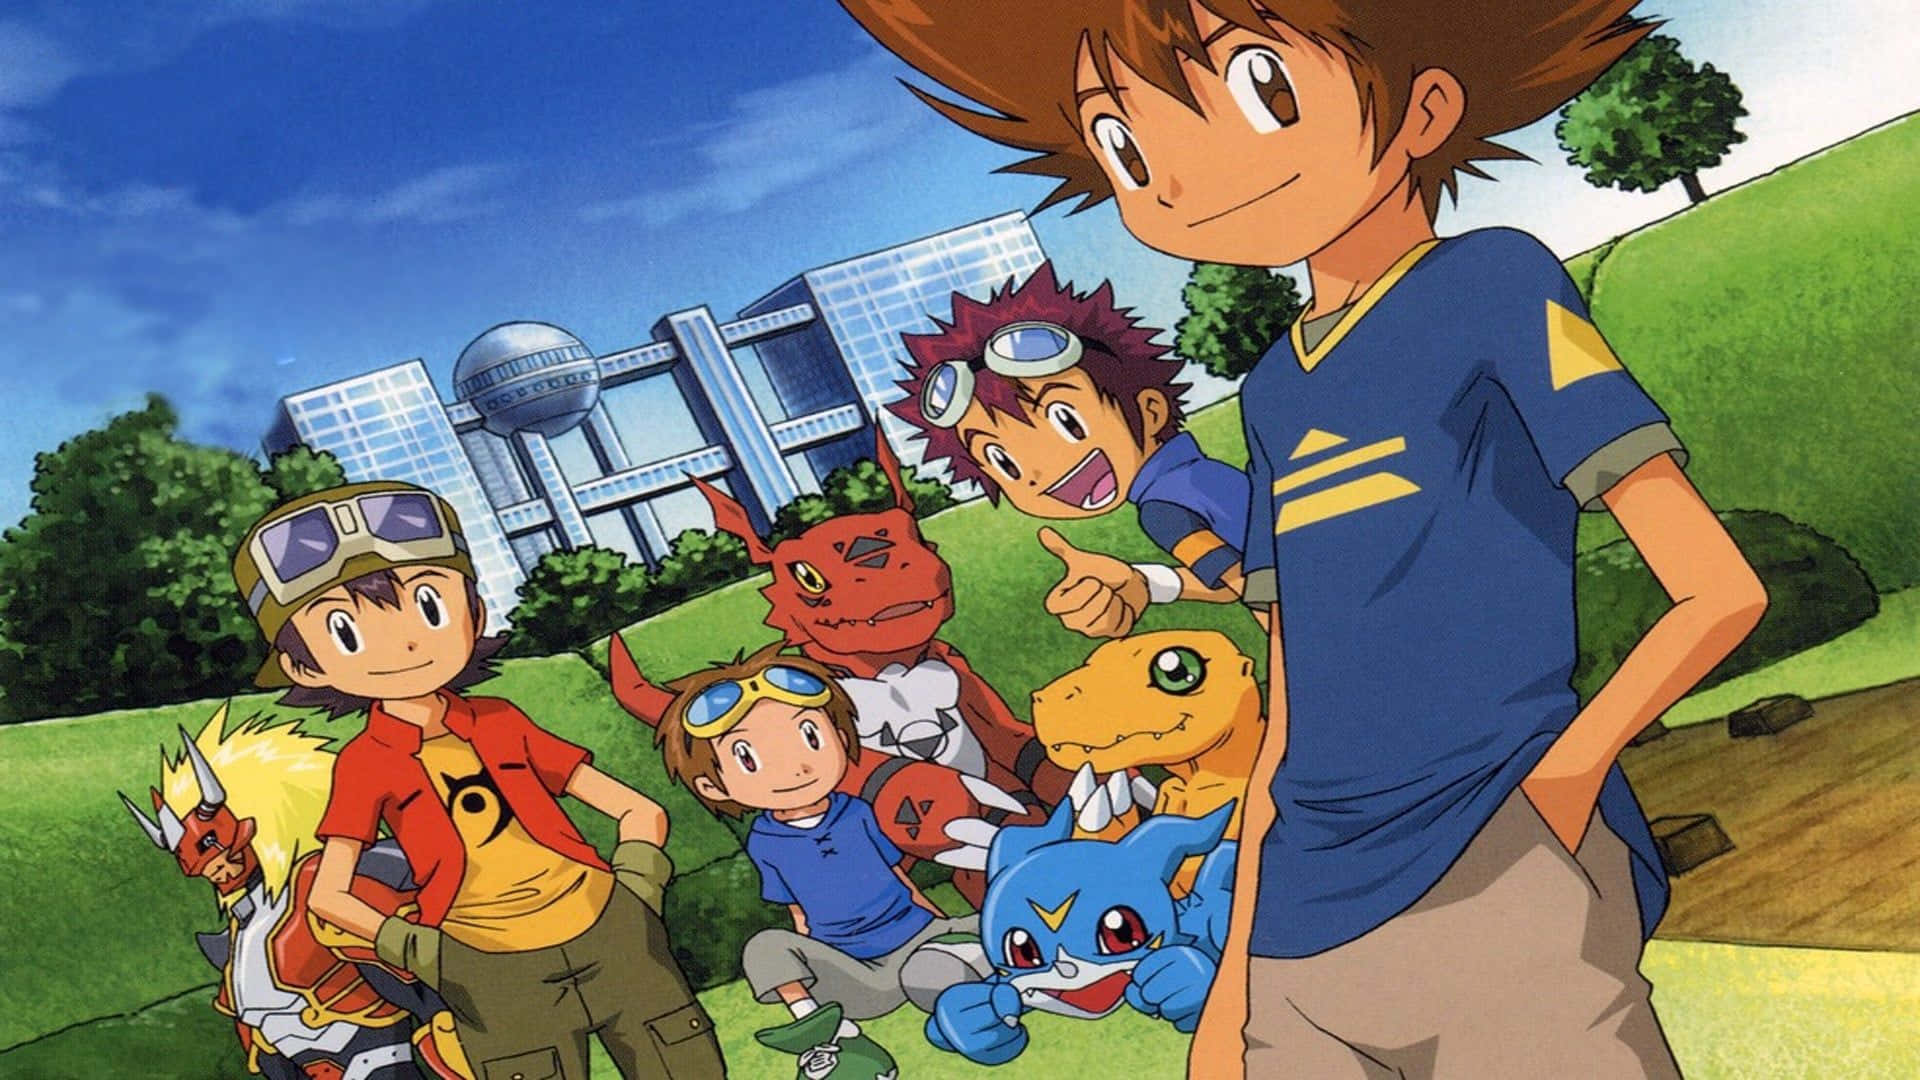 Imagende La Serie De Televisión De Anime Digimon.